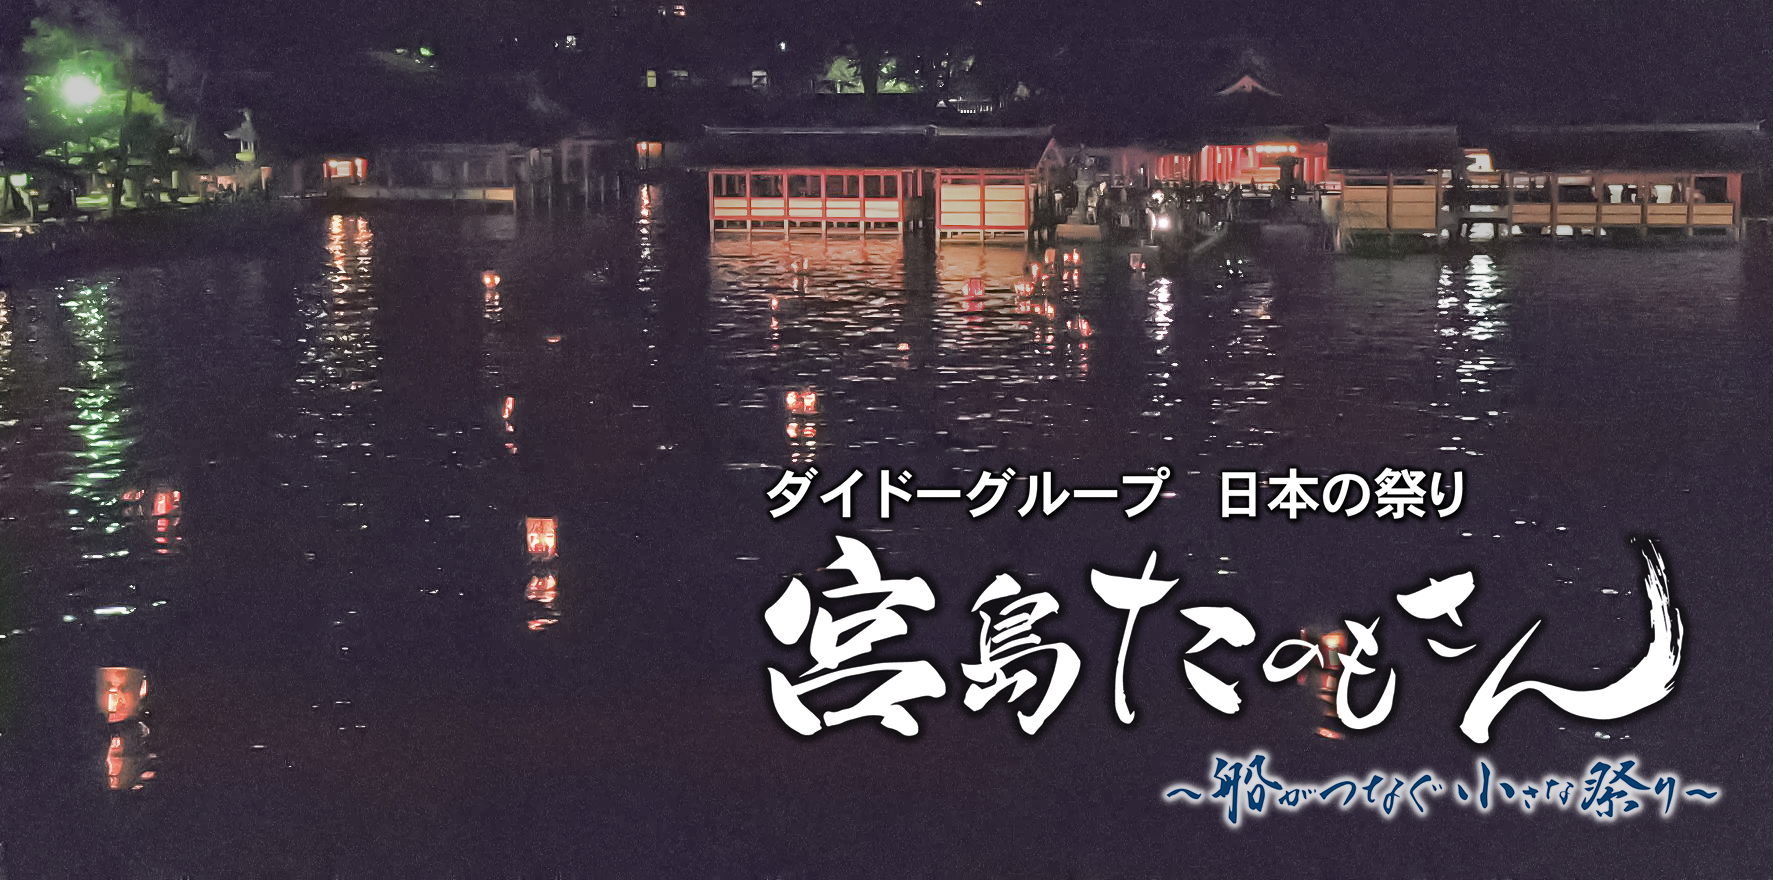 【広島ホームテレビ】感動の祭りヒューマンドキュメンタリー９月24日放送